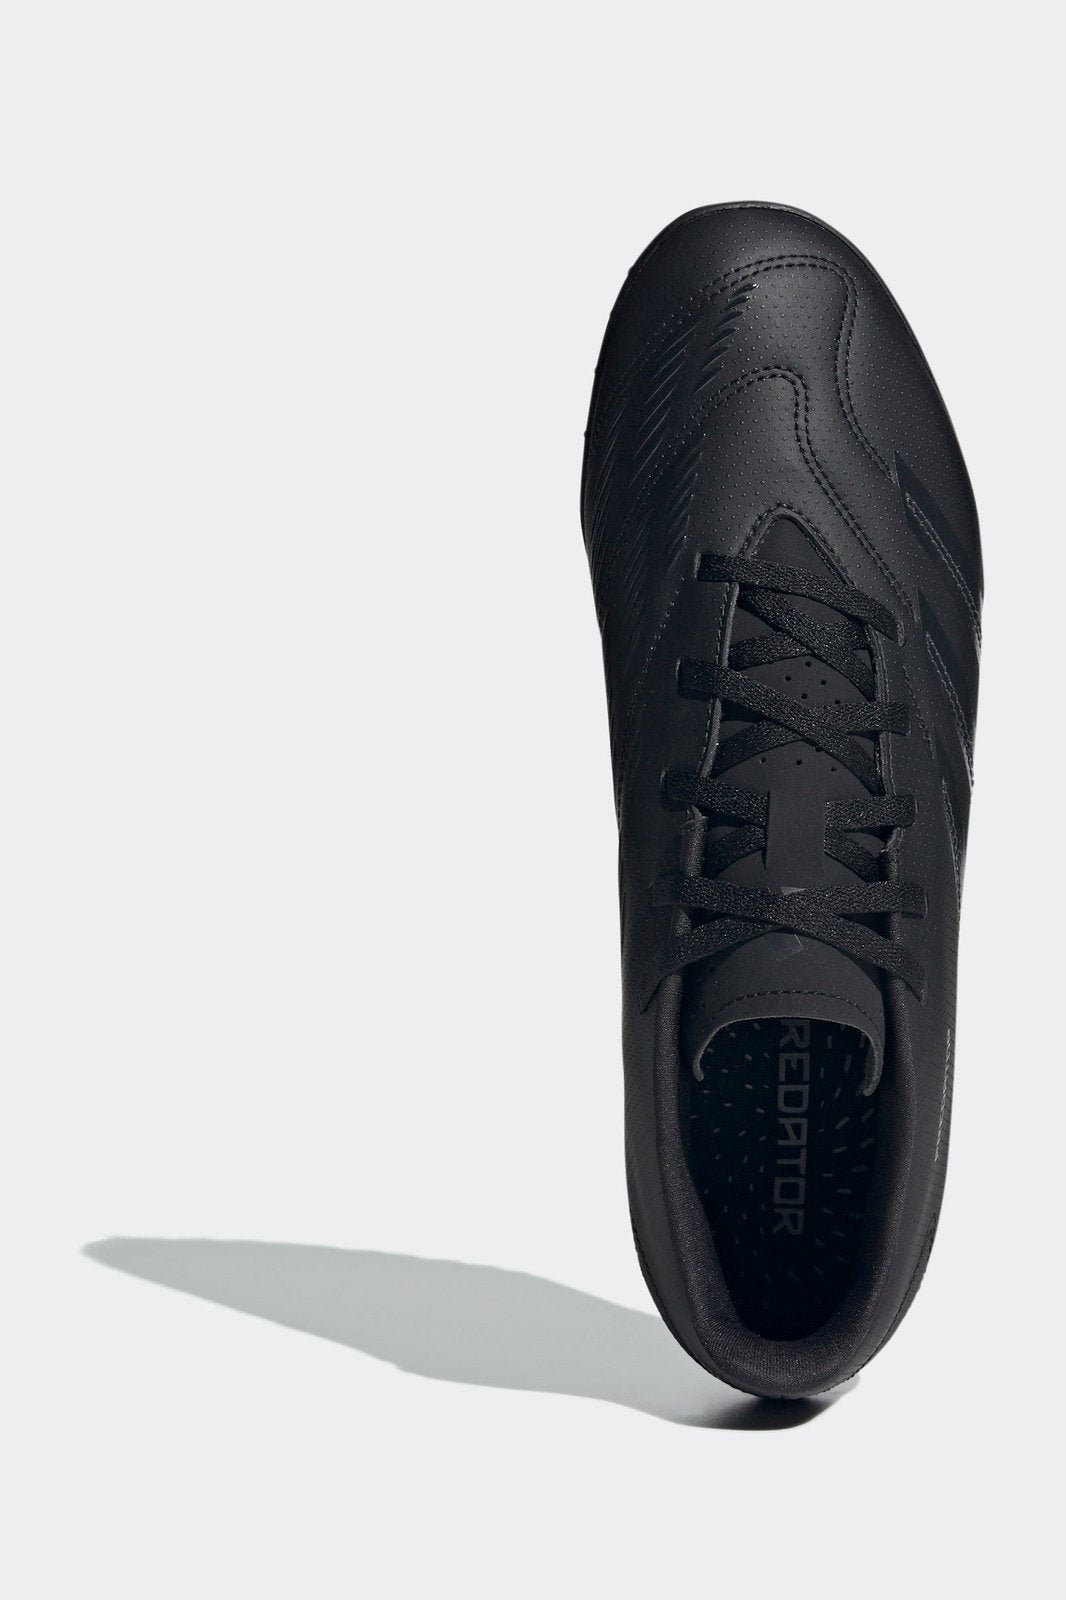 נעלי קטרגל לגברים PREDATOR CLUB TURF בצבע שחור